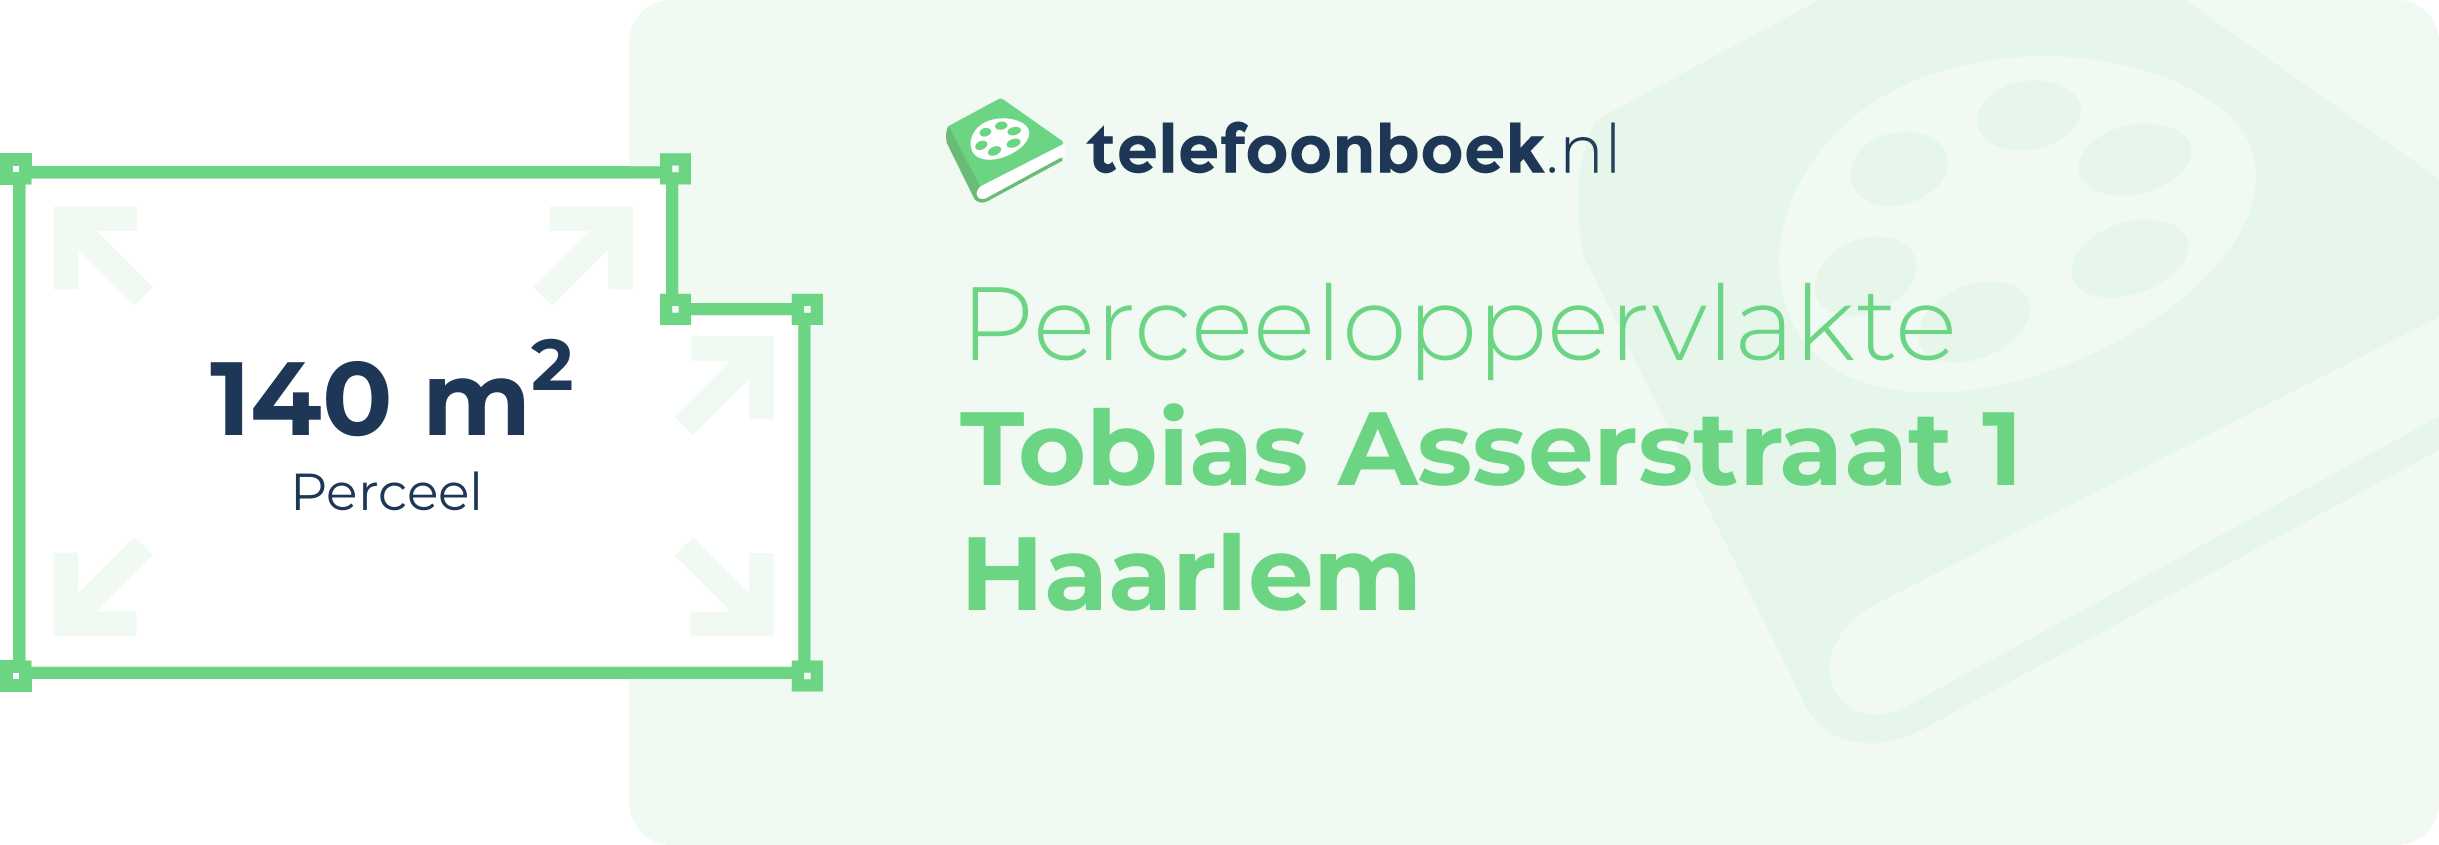 Perceeloppervlakte Tobias Asserstraat 1 Haarlem